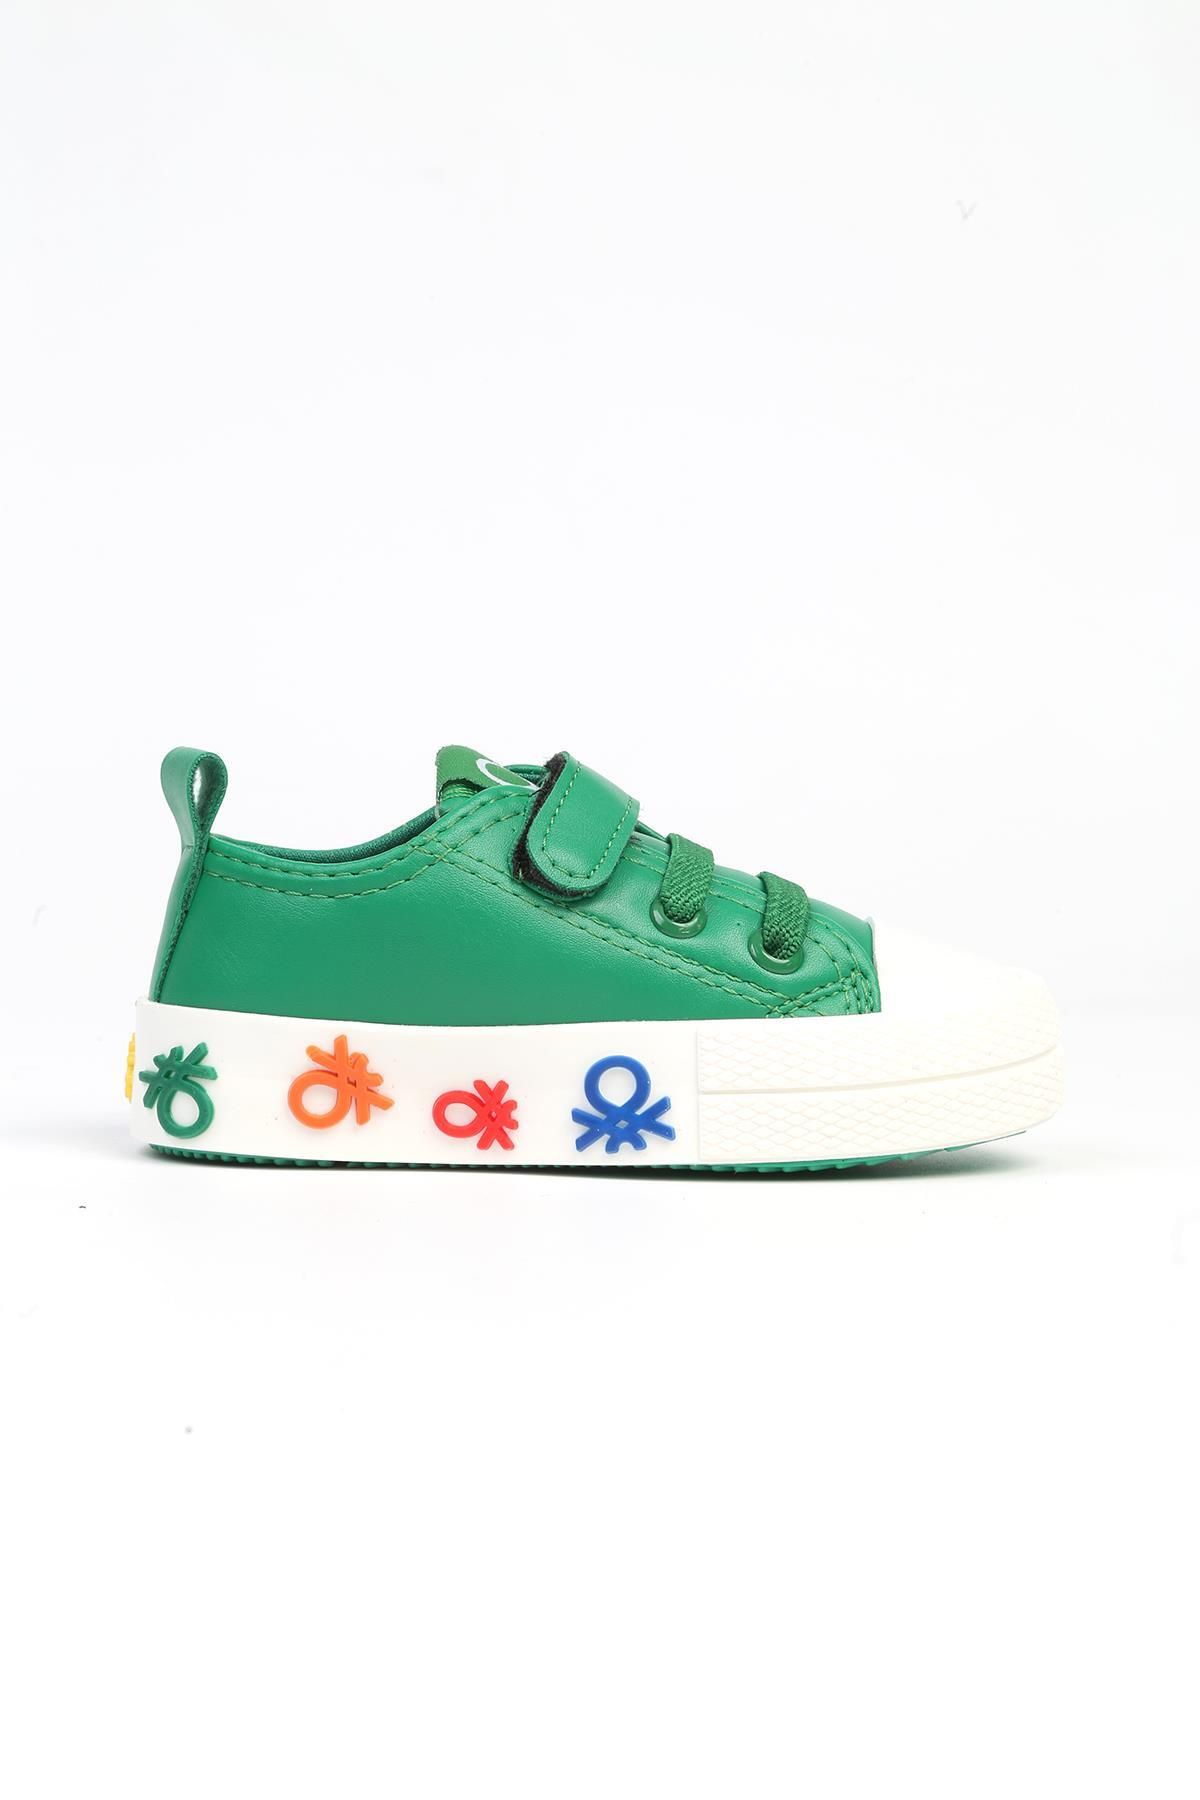 Benetton ® |BN-31153 - 3394 Yesil - Çocuk Spor Ayakkabı